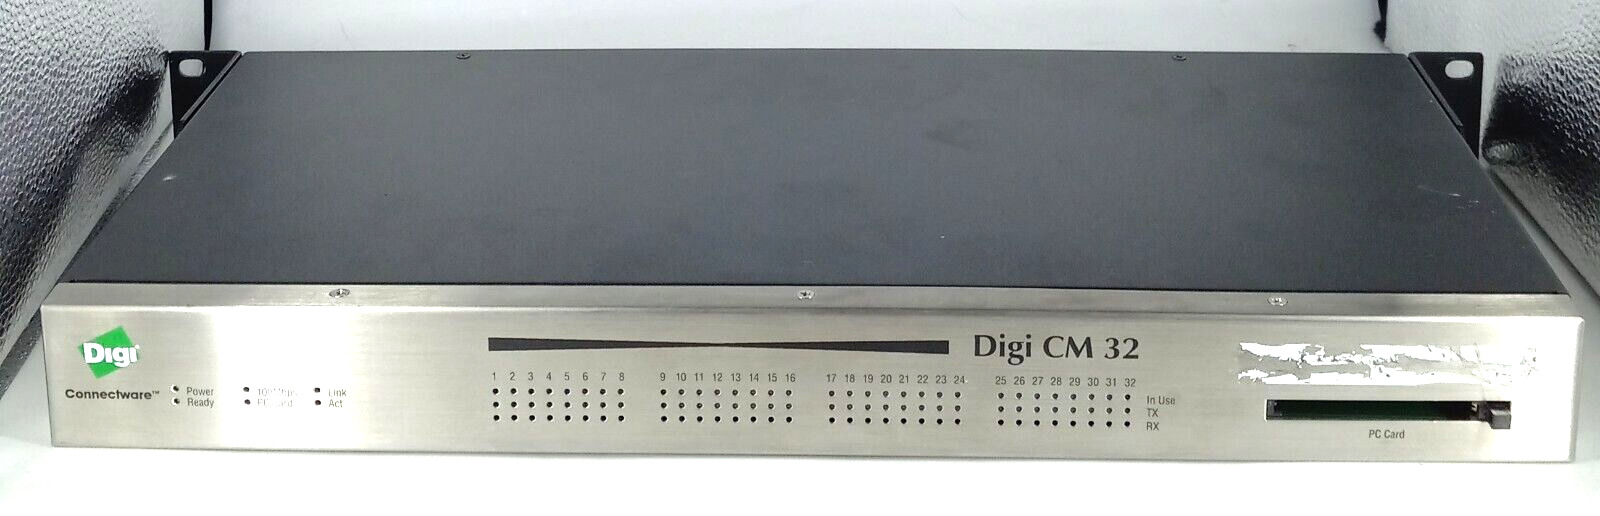 Digi CM 32 DIGICM32 32-Port Console Server W/Rack mounts 50000838-05 #3